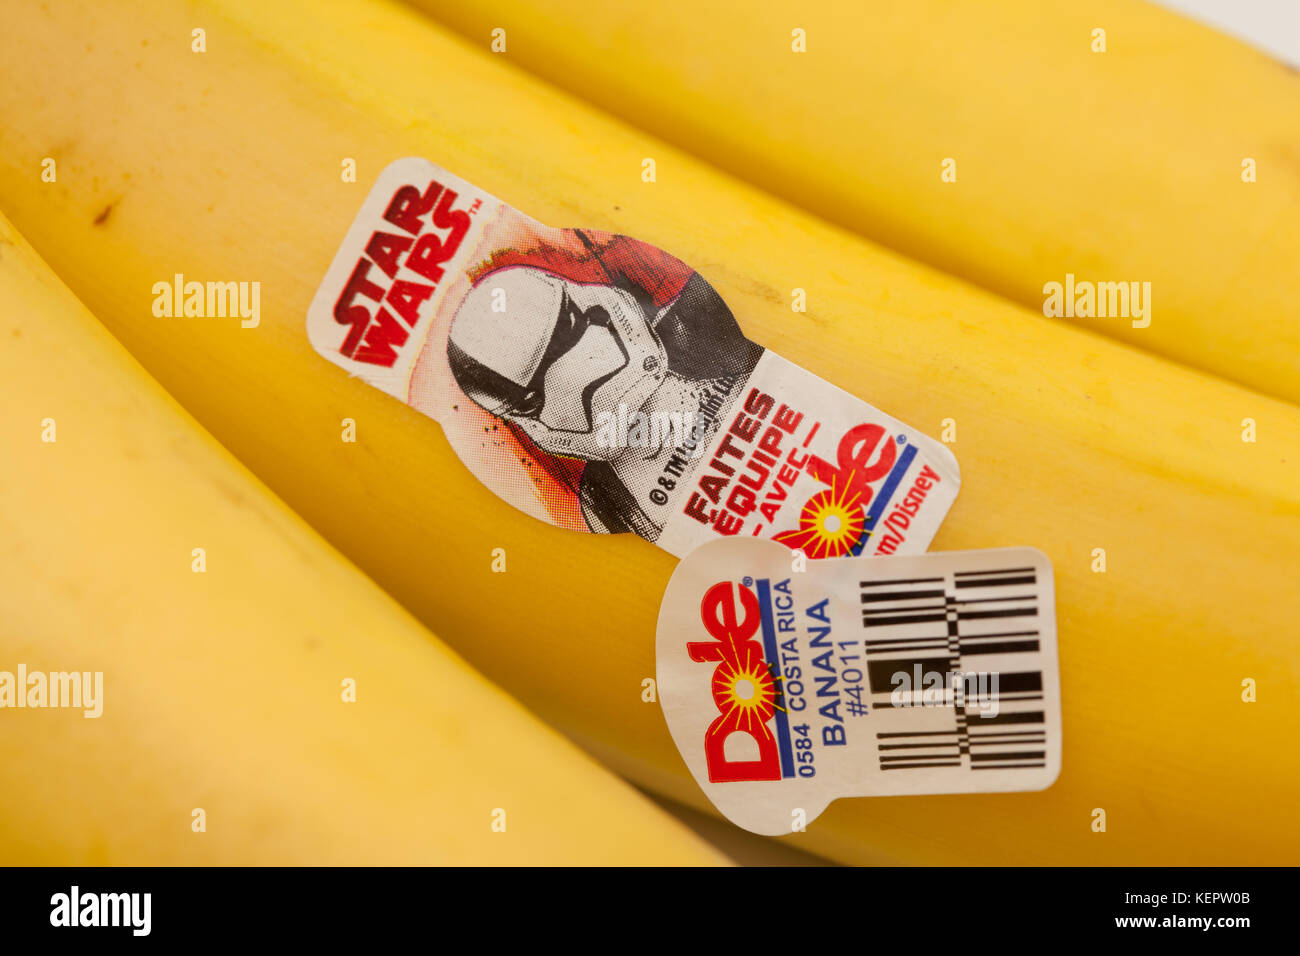 Toronto, Canada - 22 Ottobre 2017: Star Wars stormtrooper adesivo sul banane Dole Foto Stock